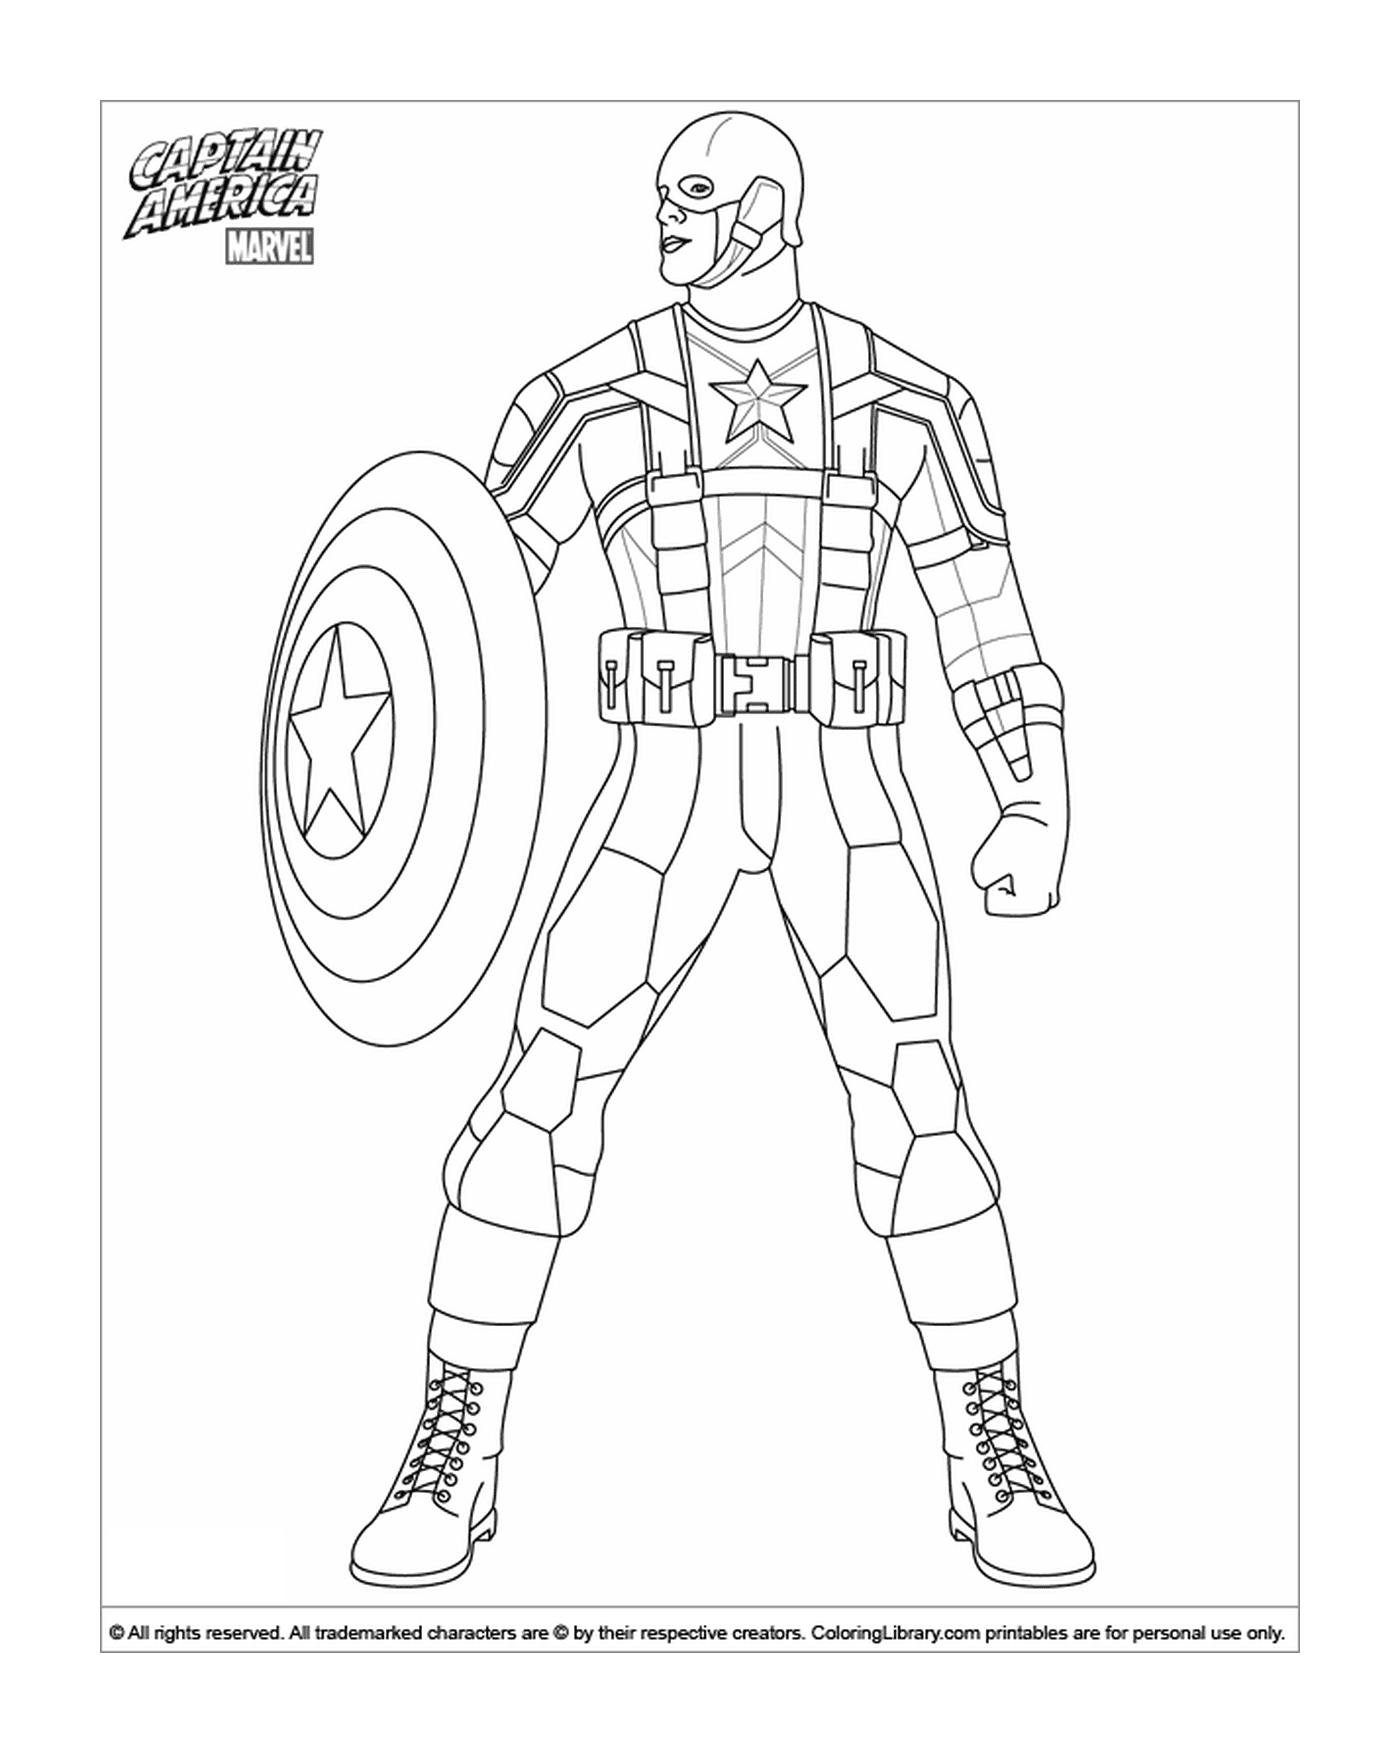   Homme en costume de Captain America colorié 